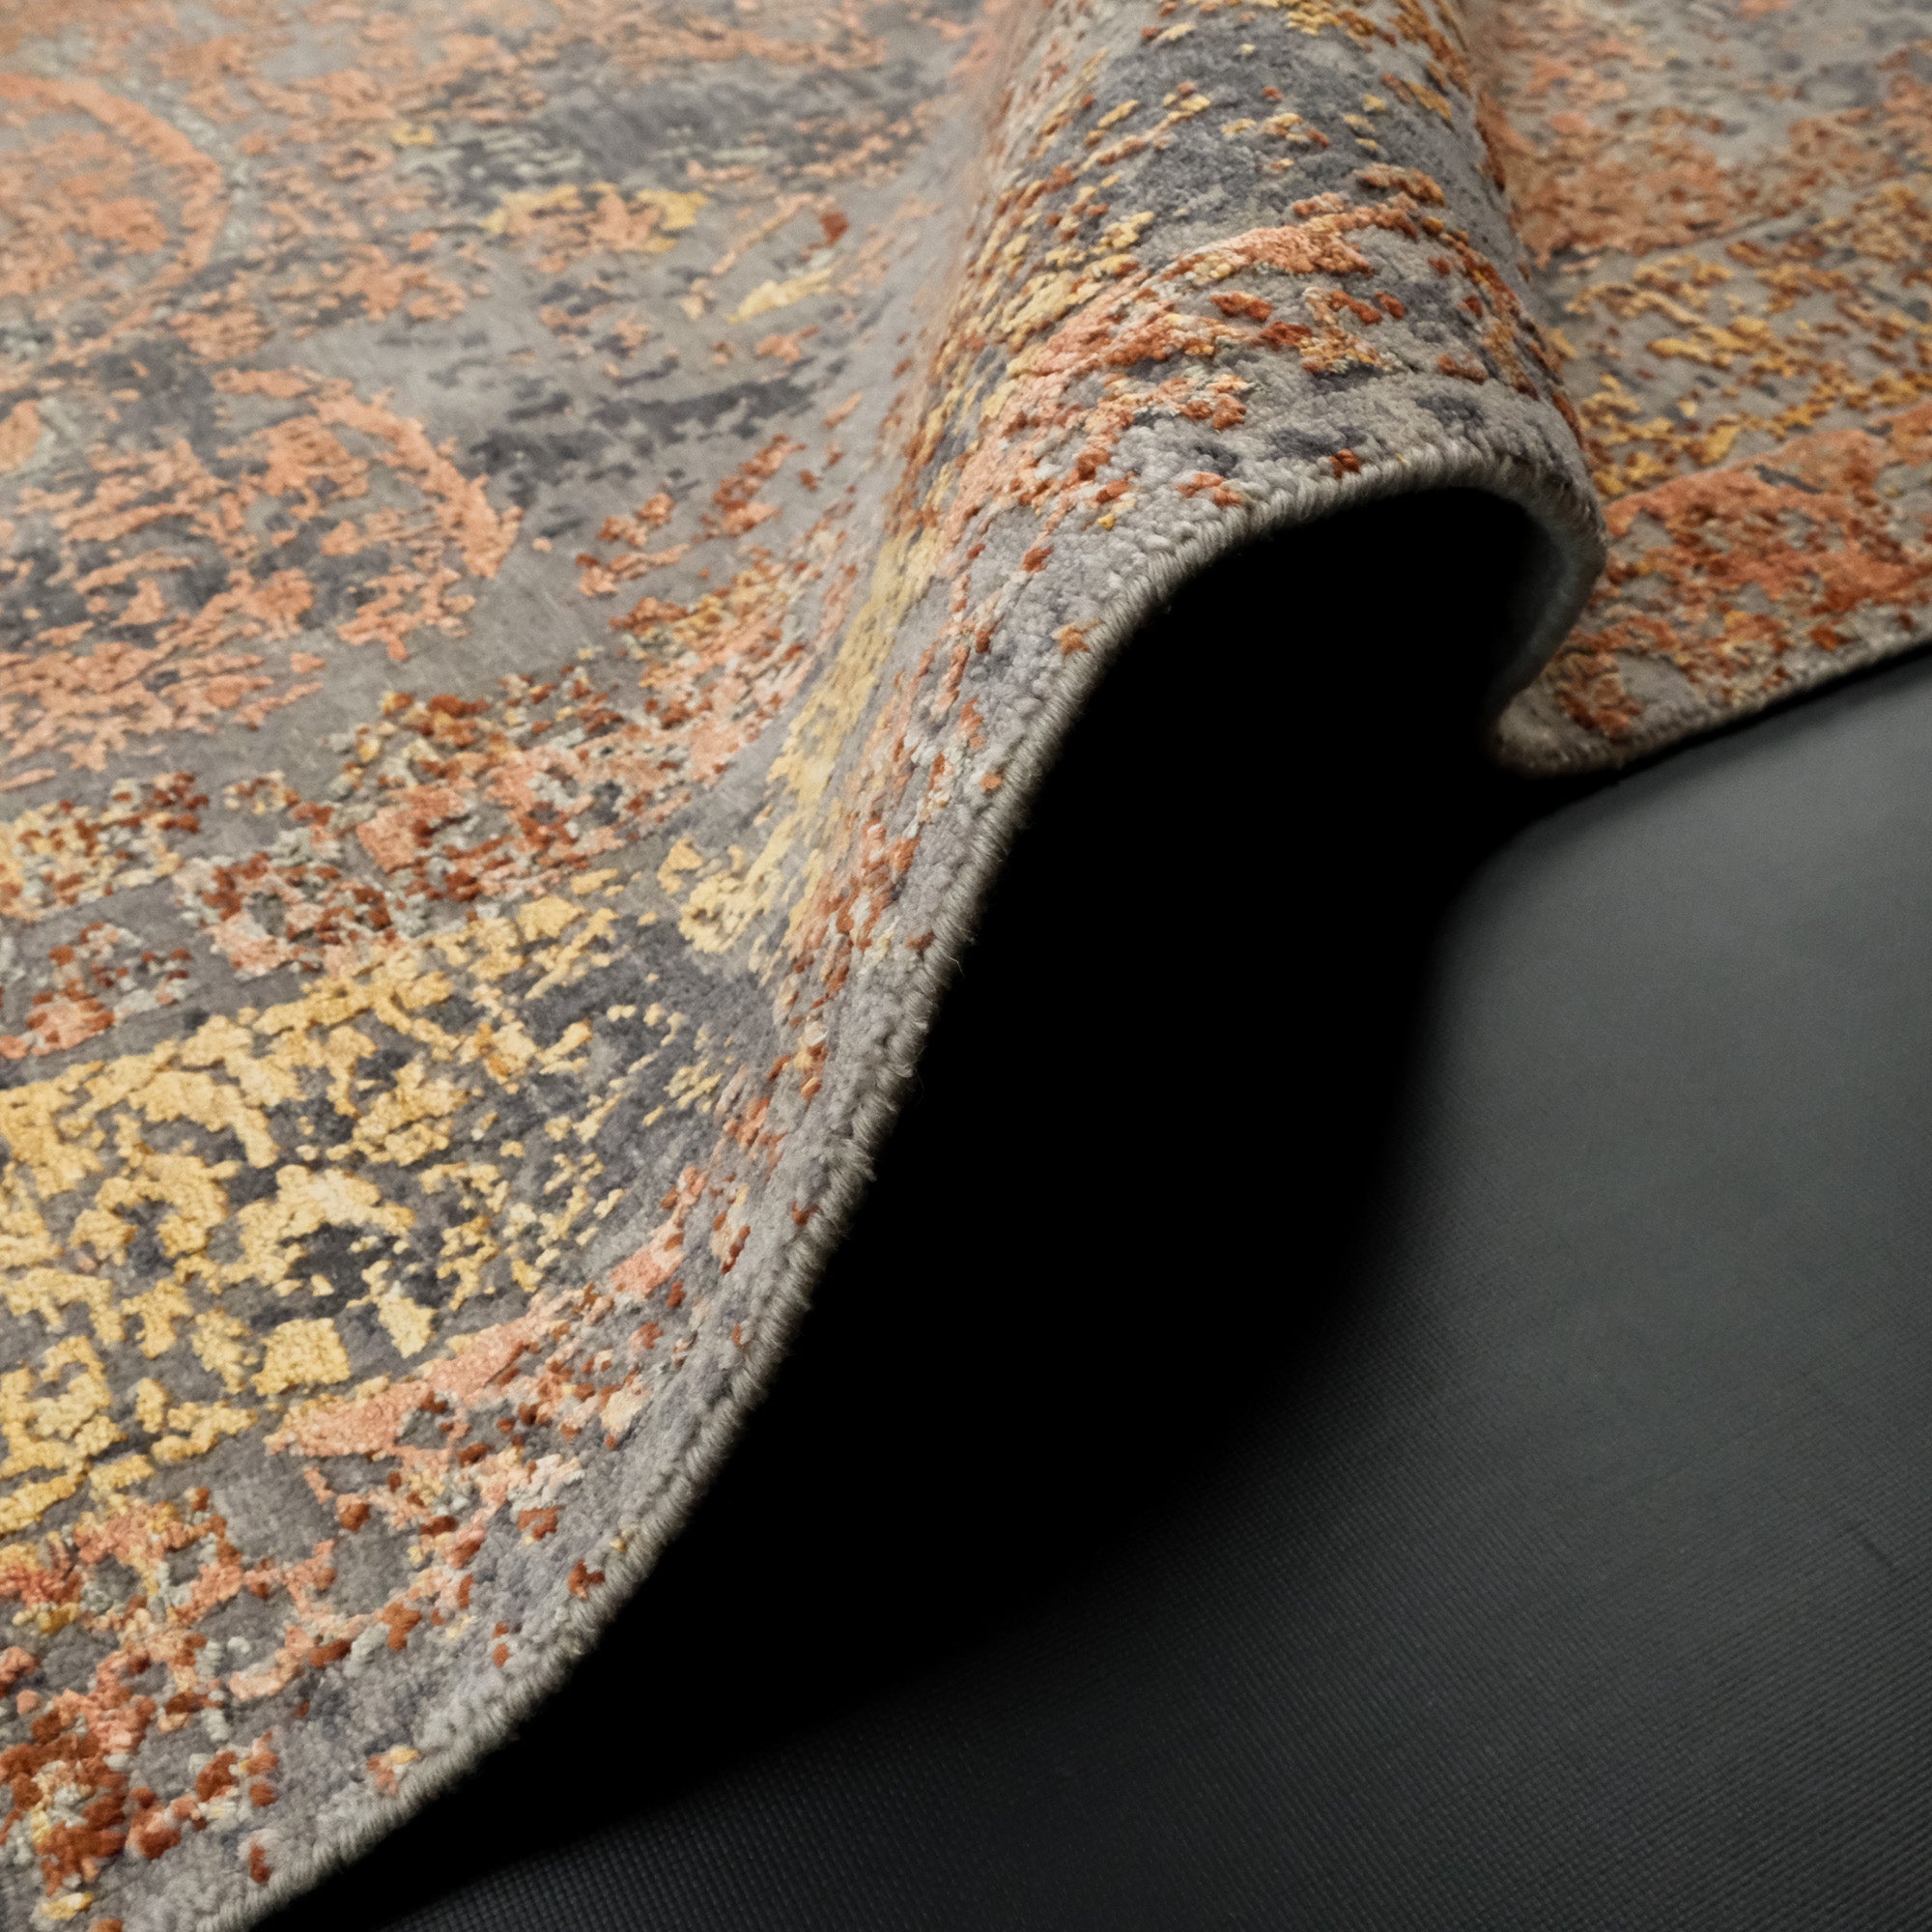 Hand Woven Vintage Copper Carpet